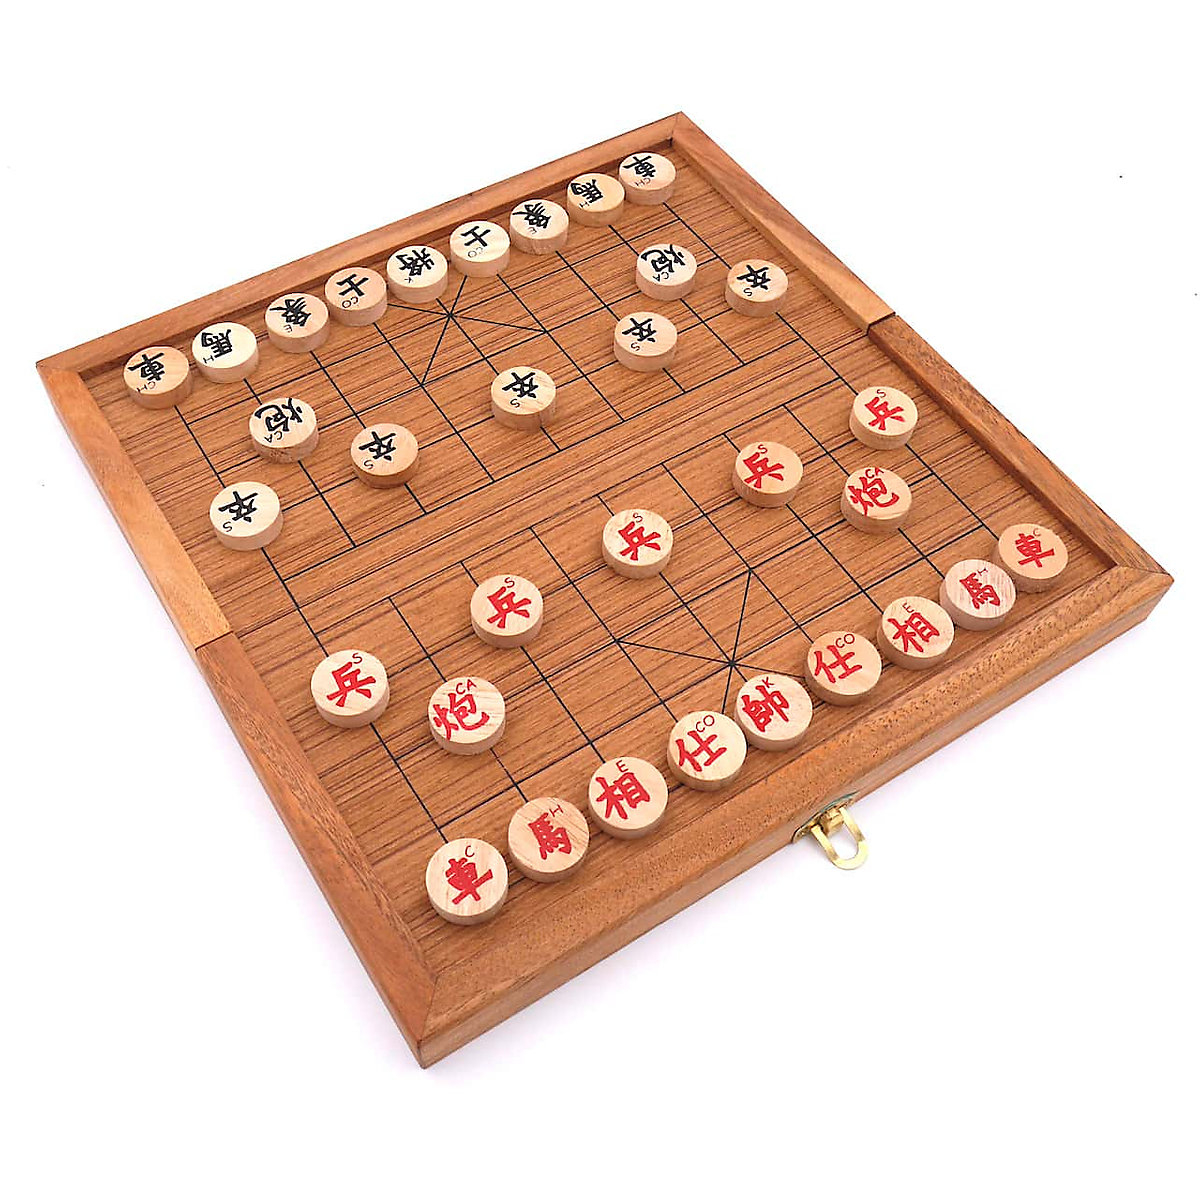 ROMBOL Xiangqi edles chinesisches Schachspiel Set mit originalen Holzscheiben